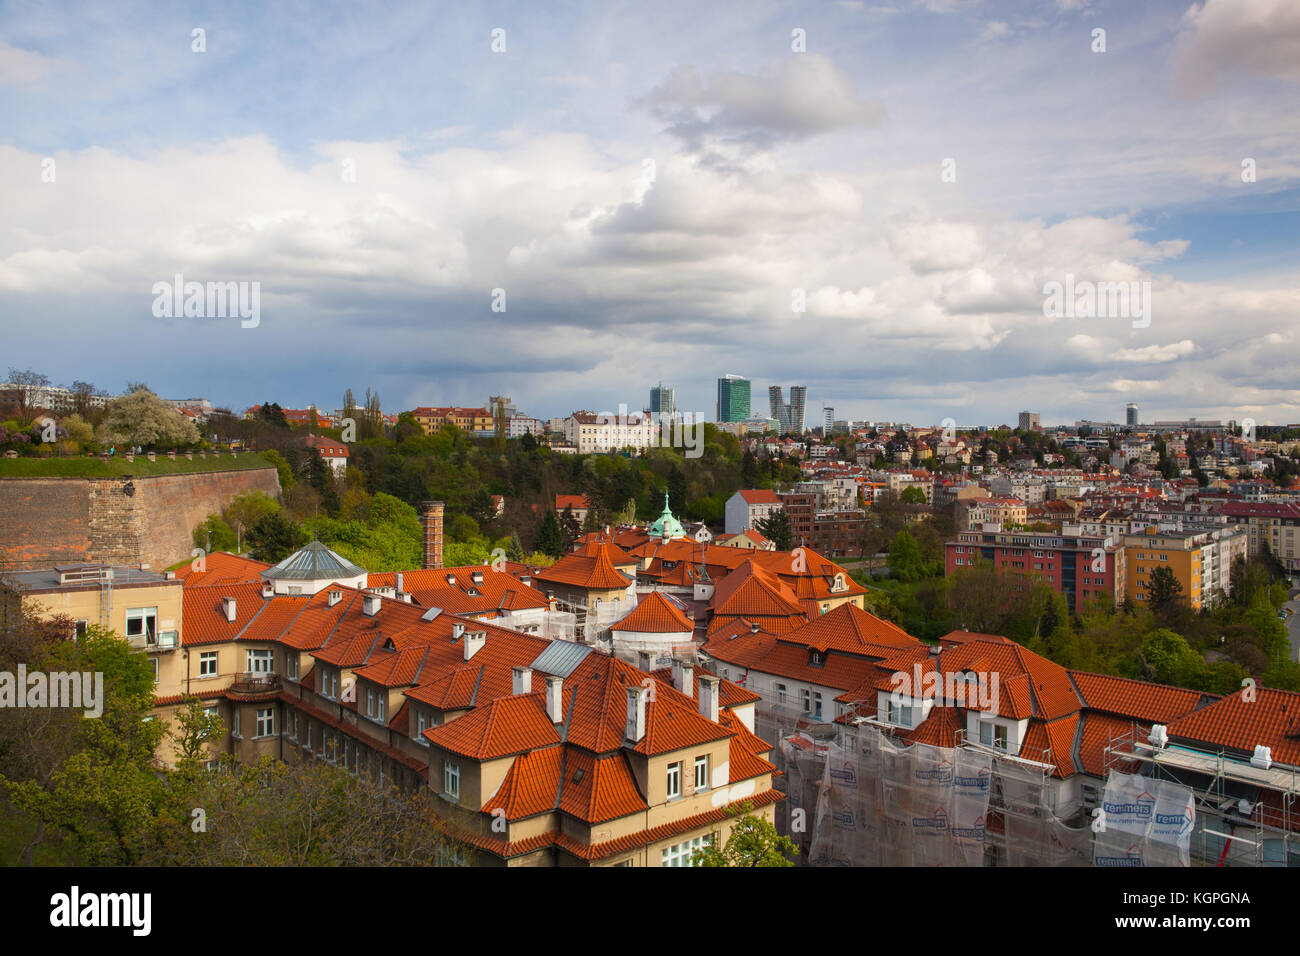 Praga, Repubblica ceca - Aprile 23,2017: vista da vysehrad dopo la pioggia.vysehrad è un forte storico situato nella città di Praga ed è stato costruito, probabl Foto Stock